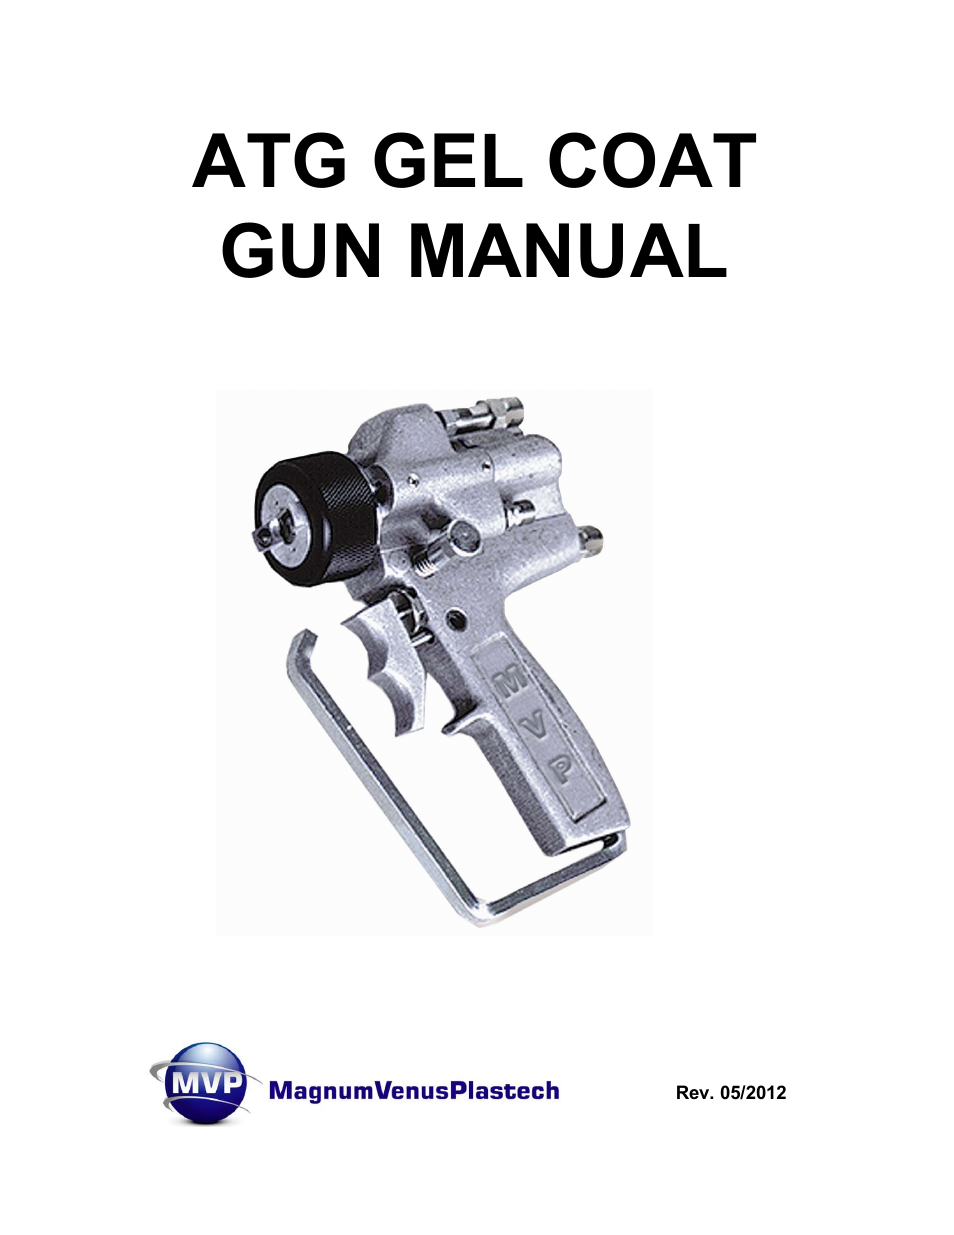 ATG Gel Coat Gun